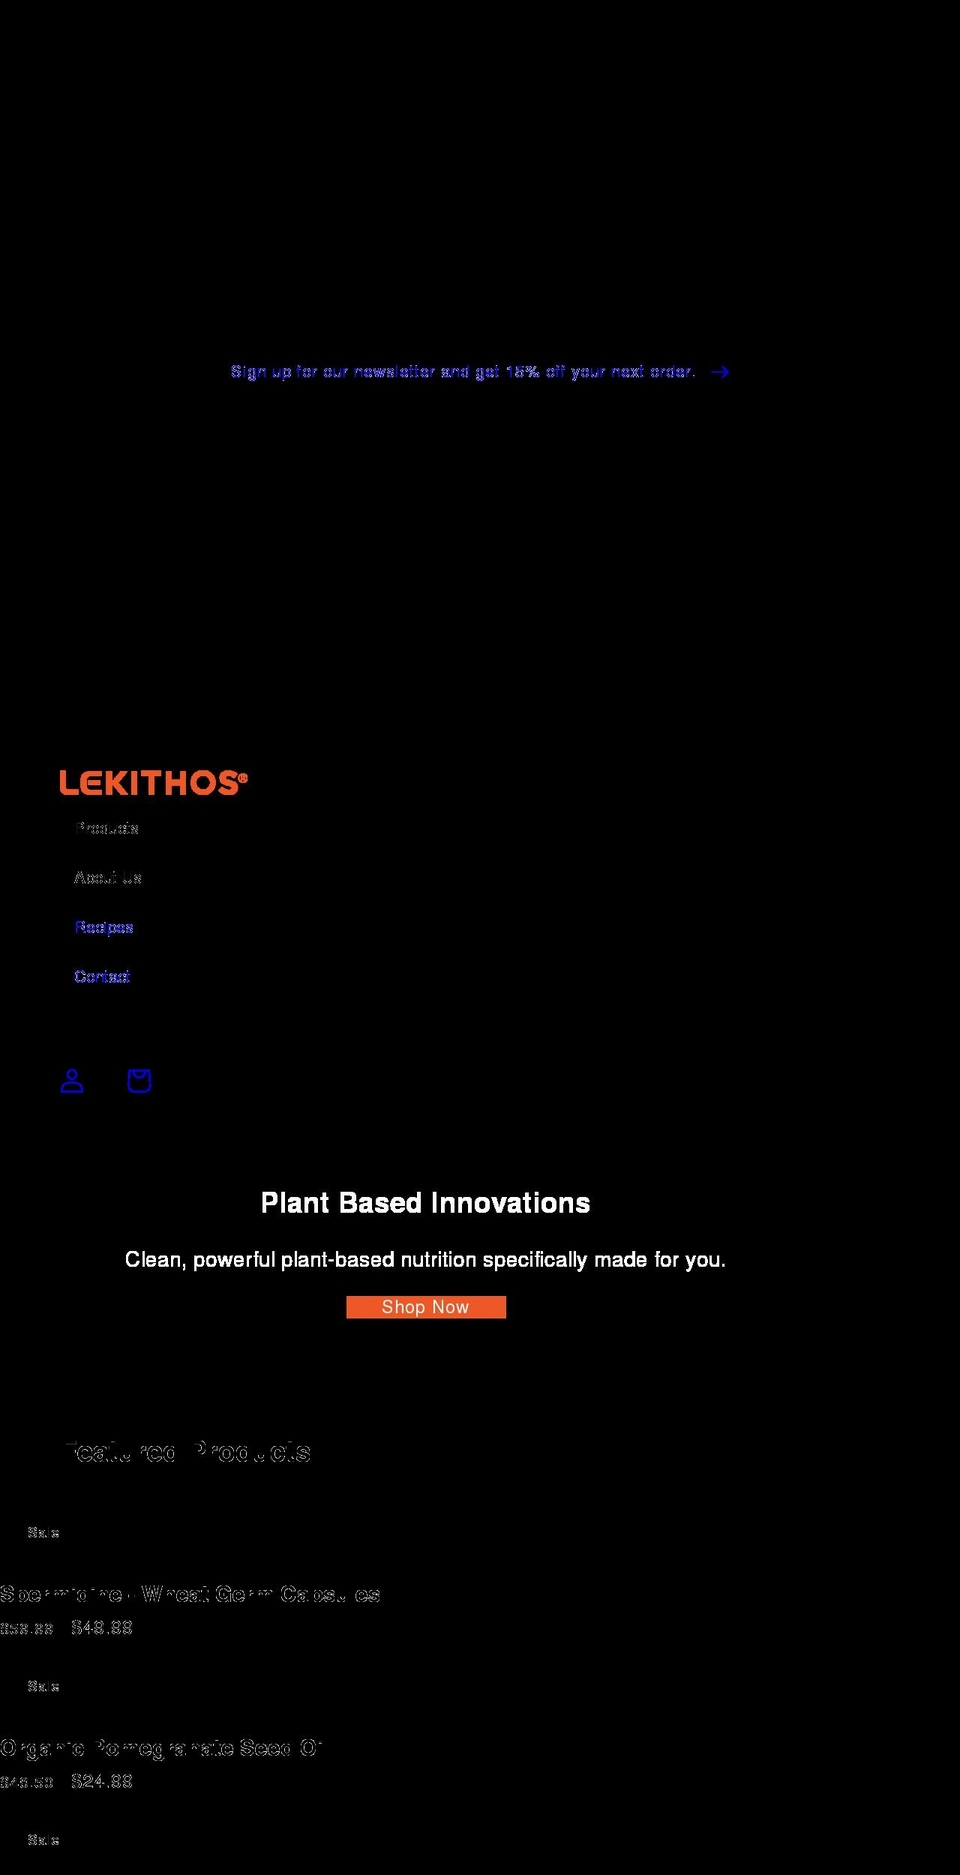 lekithos.com shopify website screenshot